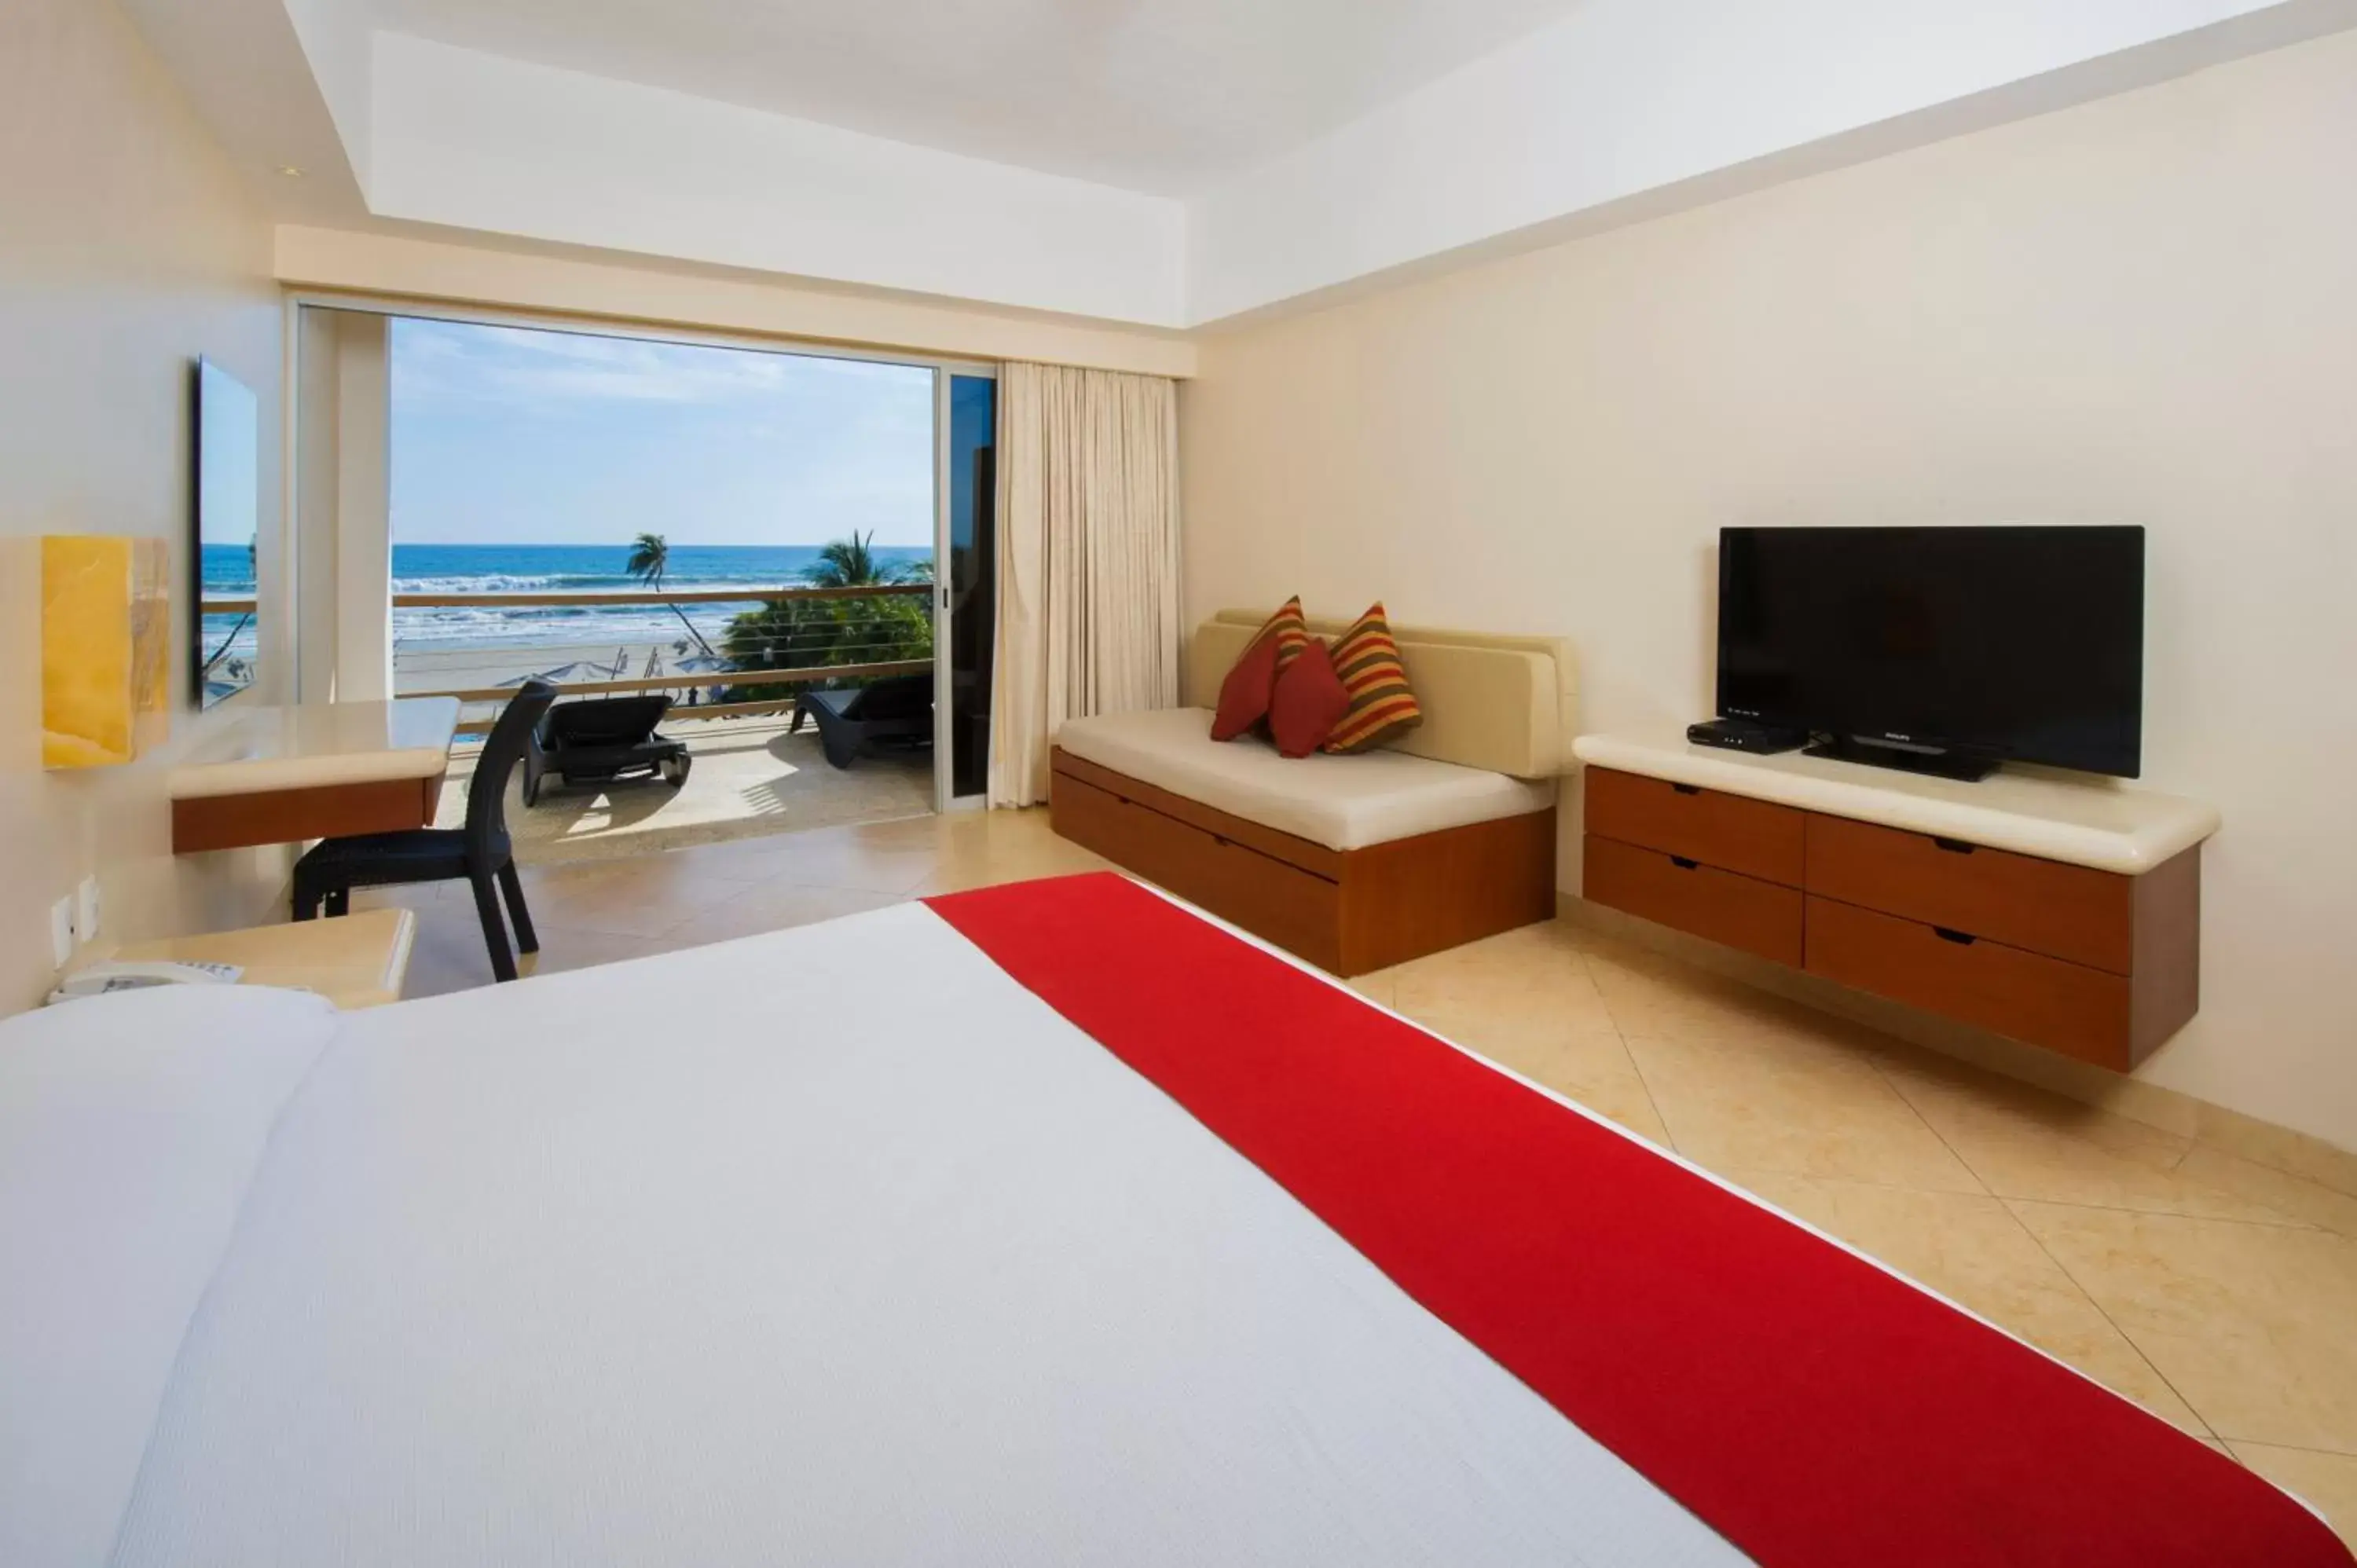 Junior Suite with Sea View in Mishol Bodas Hotel & Beach Club Privado